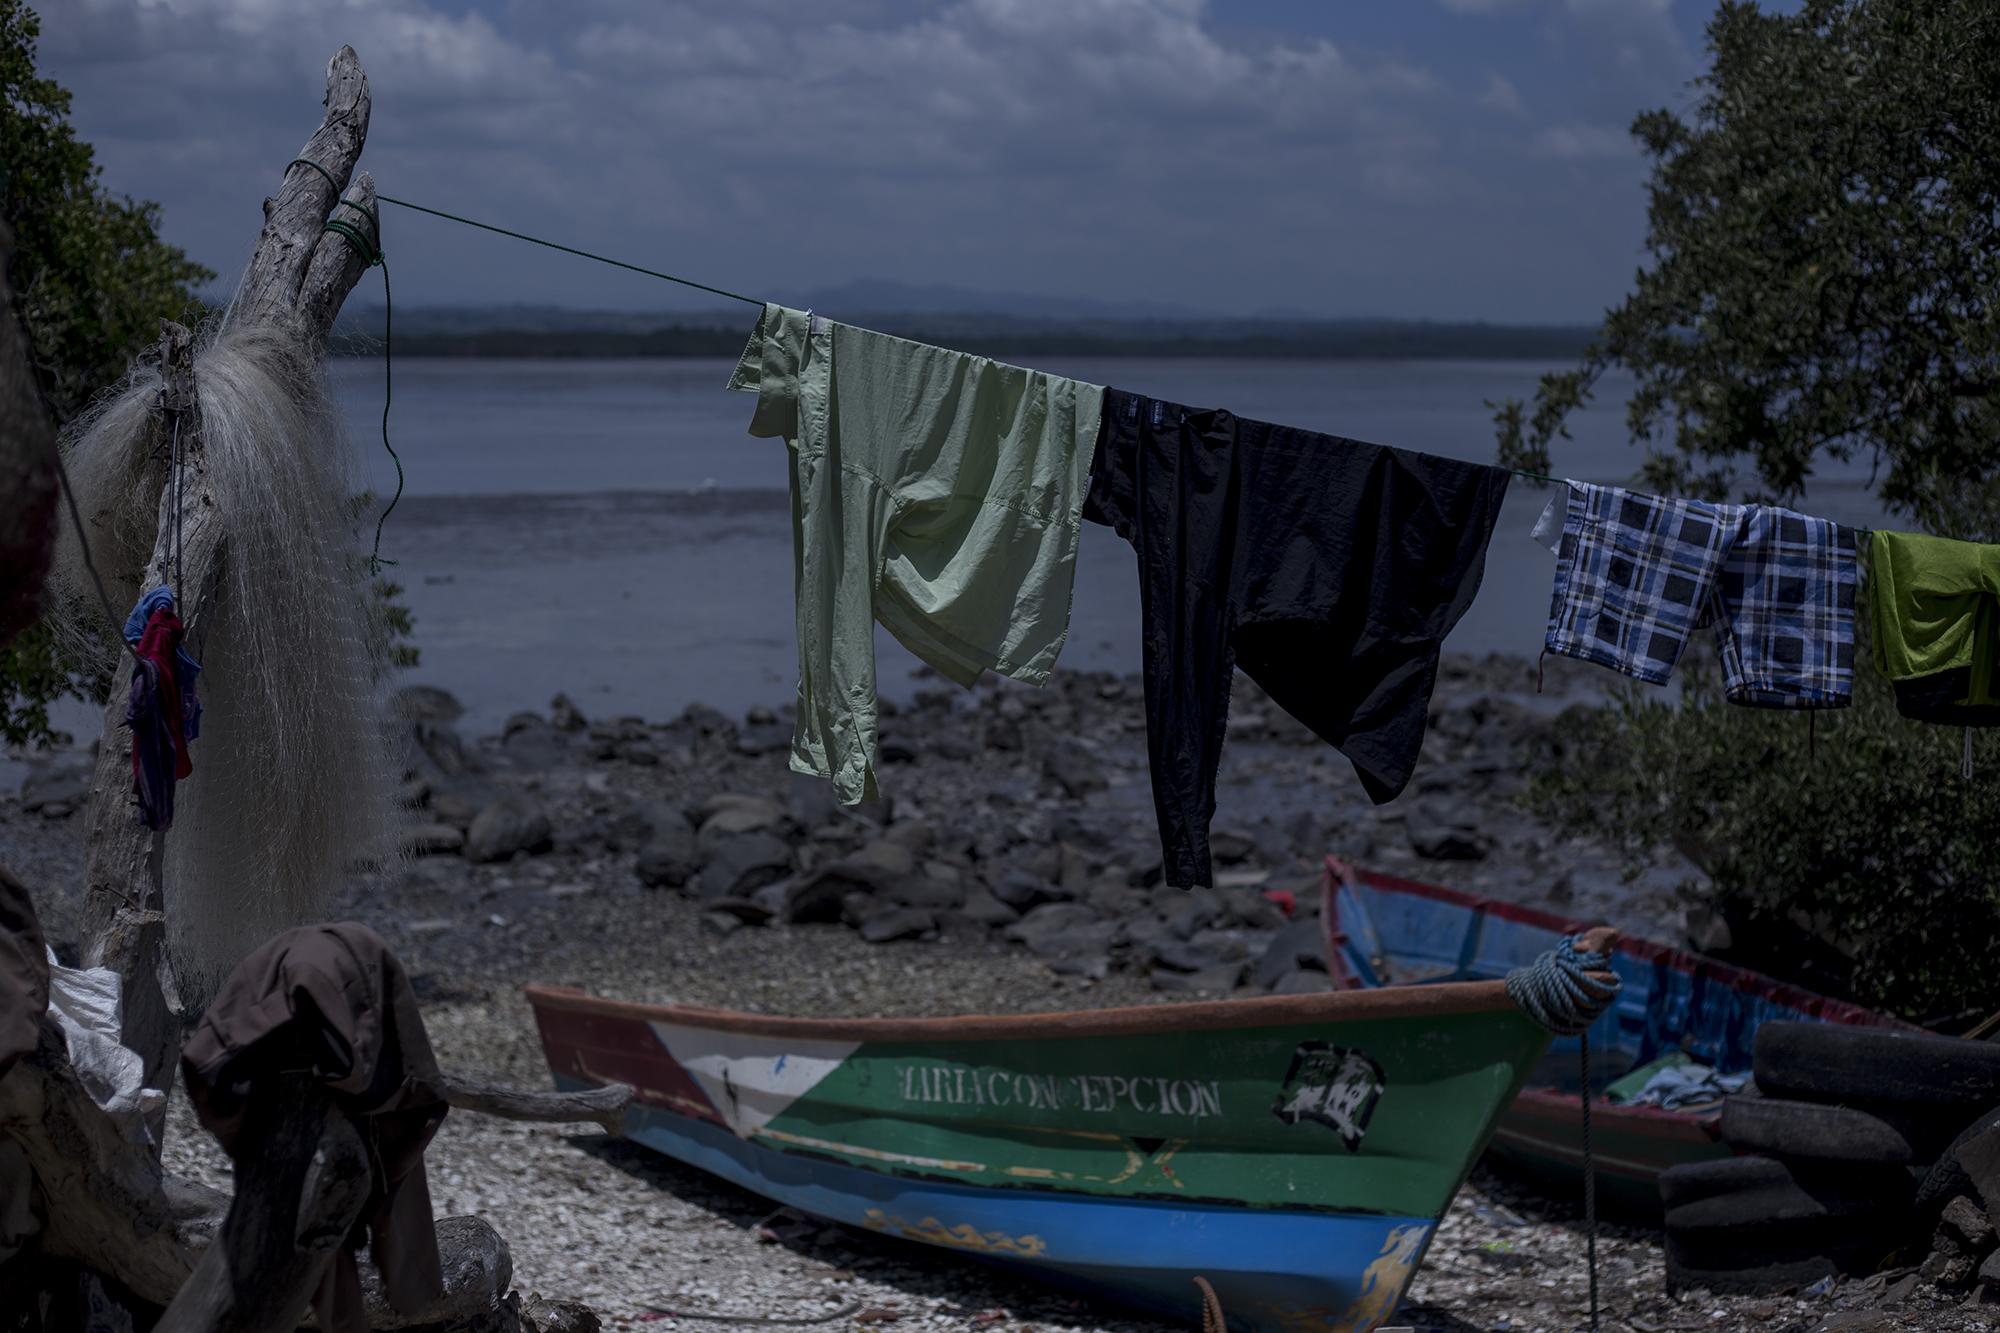 La isla Perico es un lugar de gente pobre. La comunidad no cuenta con los servicios básicos de salud, agua potable o aguas negras. Tienen energía gracias a un proyecto de energía solar, ejecutado por USAID. Foto de El Faro, por Víctor Peña.